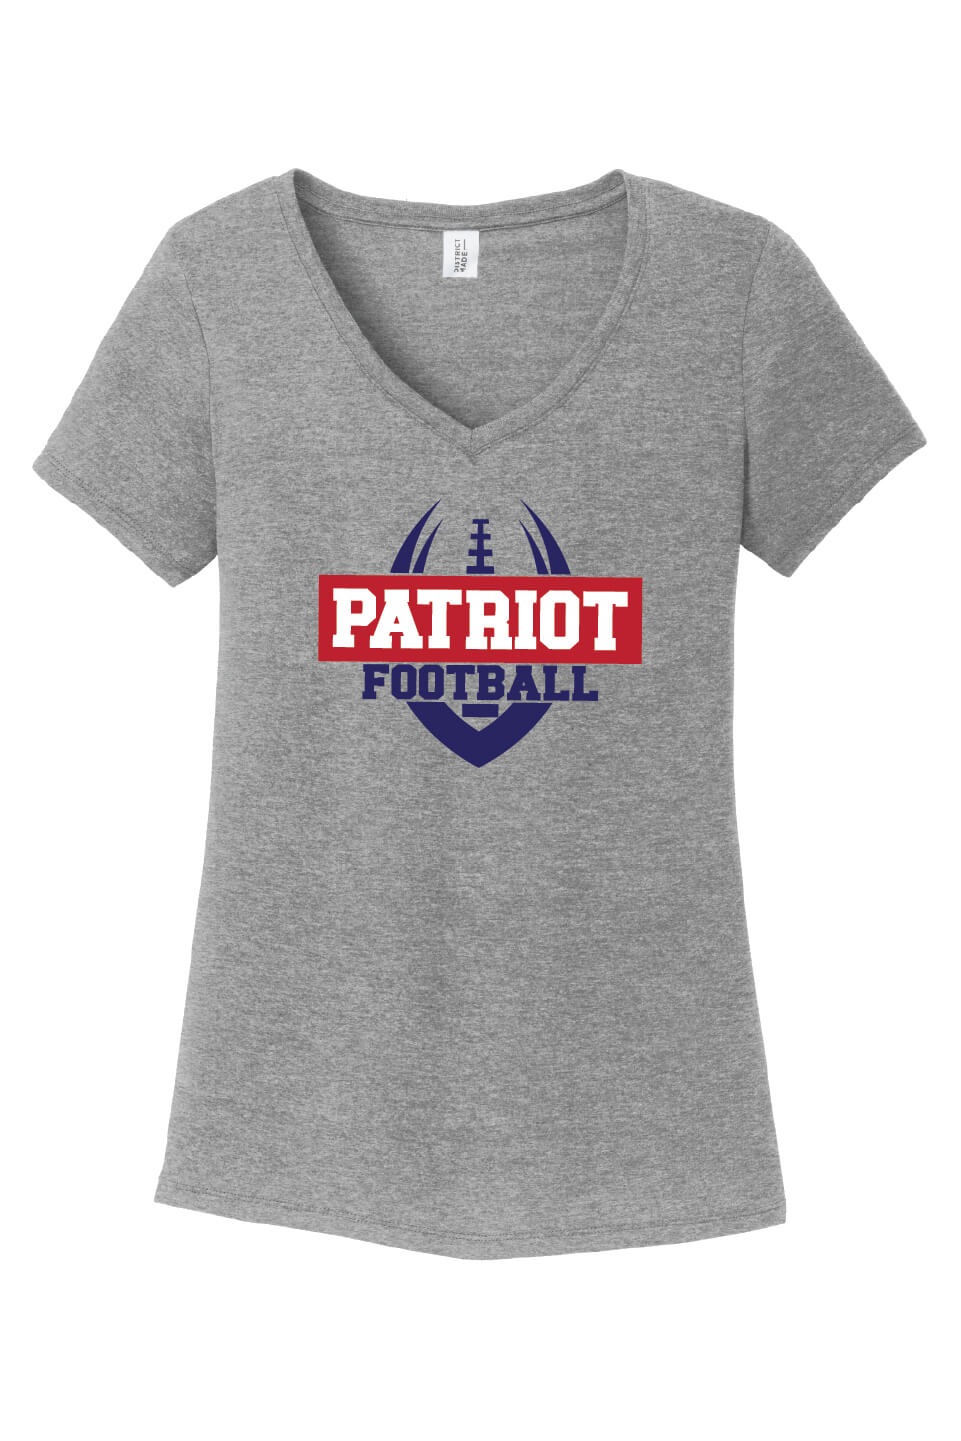 Patriot Football Ladies V-Neck Short Sleeve T-Shirt gray